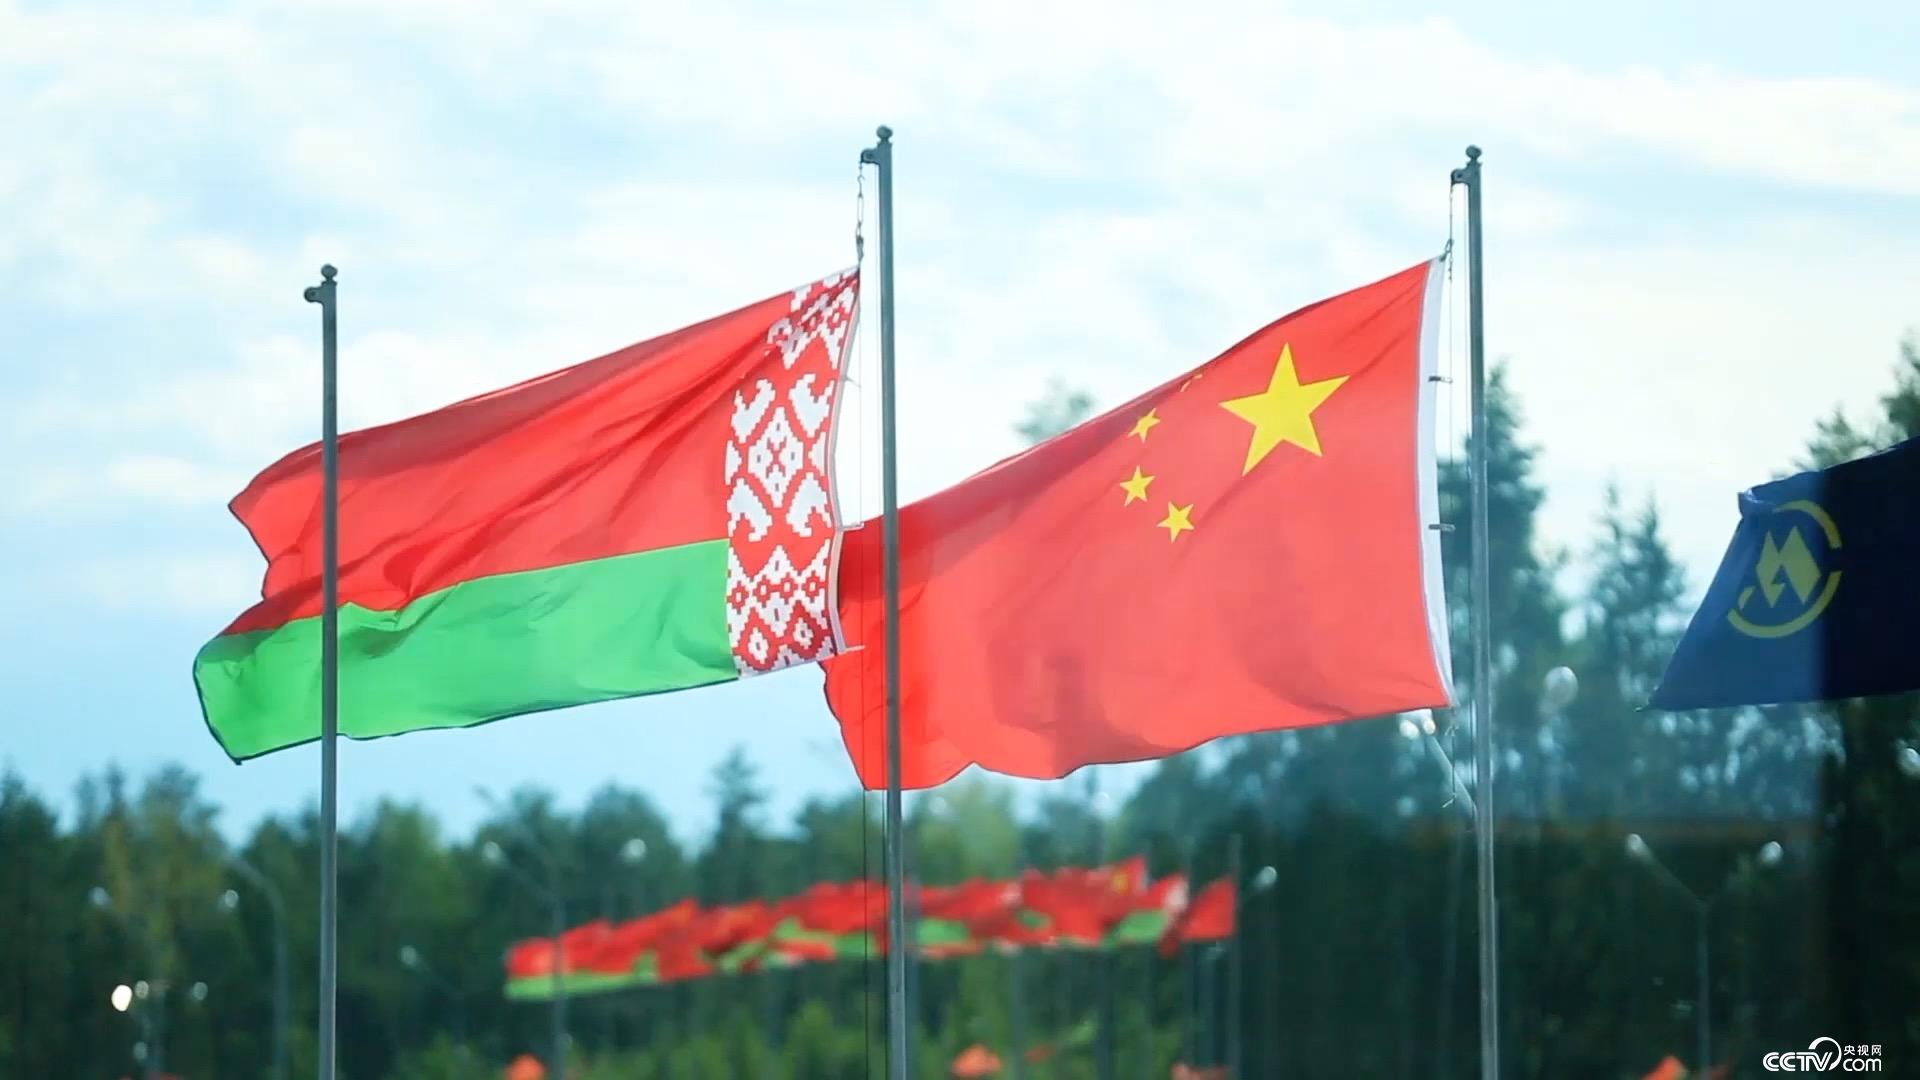 01、2013年，中国和白俄罗斯建立全面战略伙伴关系，中白两国的关系随着“一带一路”倡议，来到历史最高点_副本